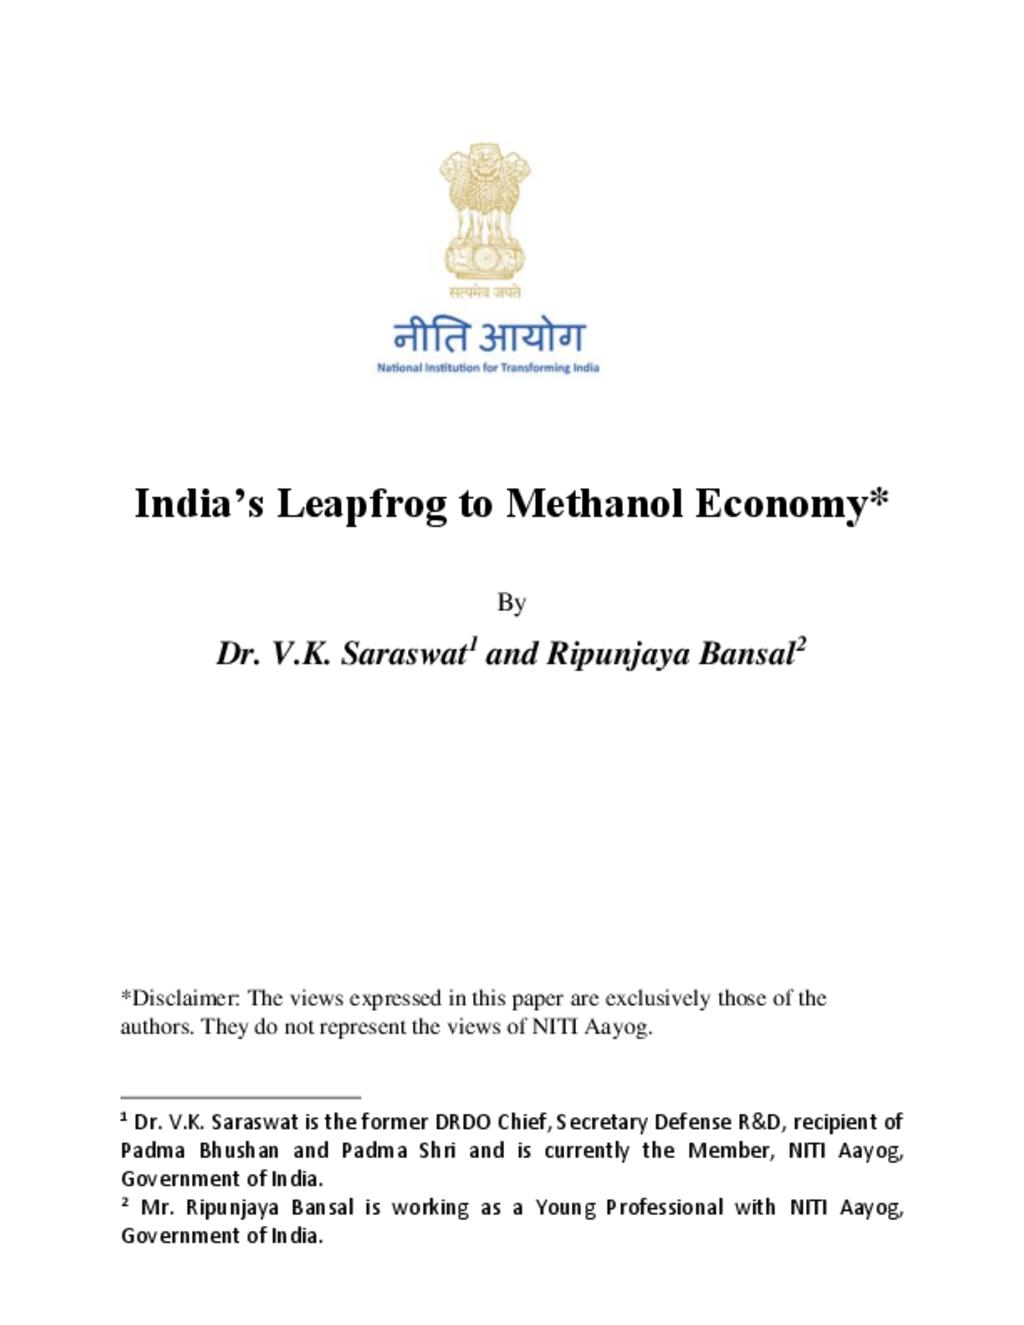 Methanol Economy